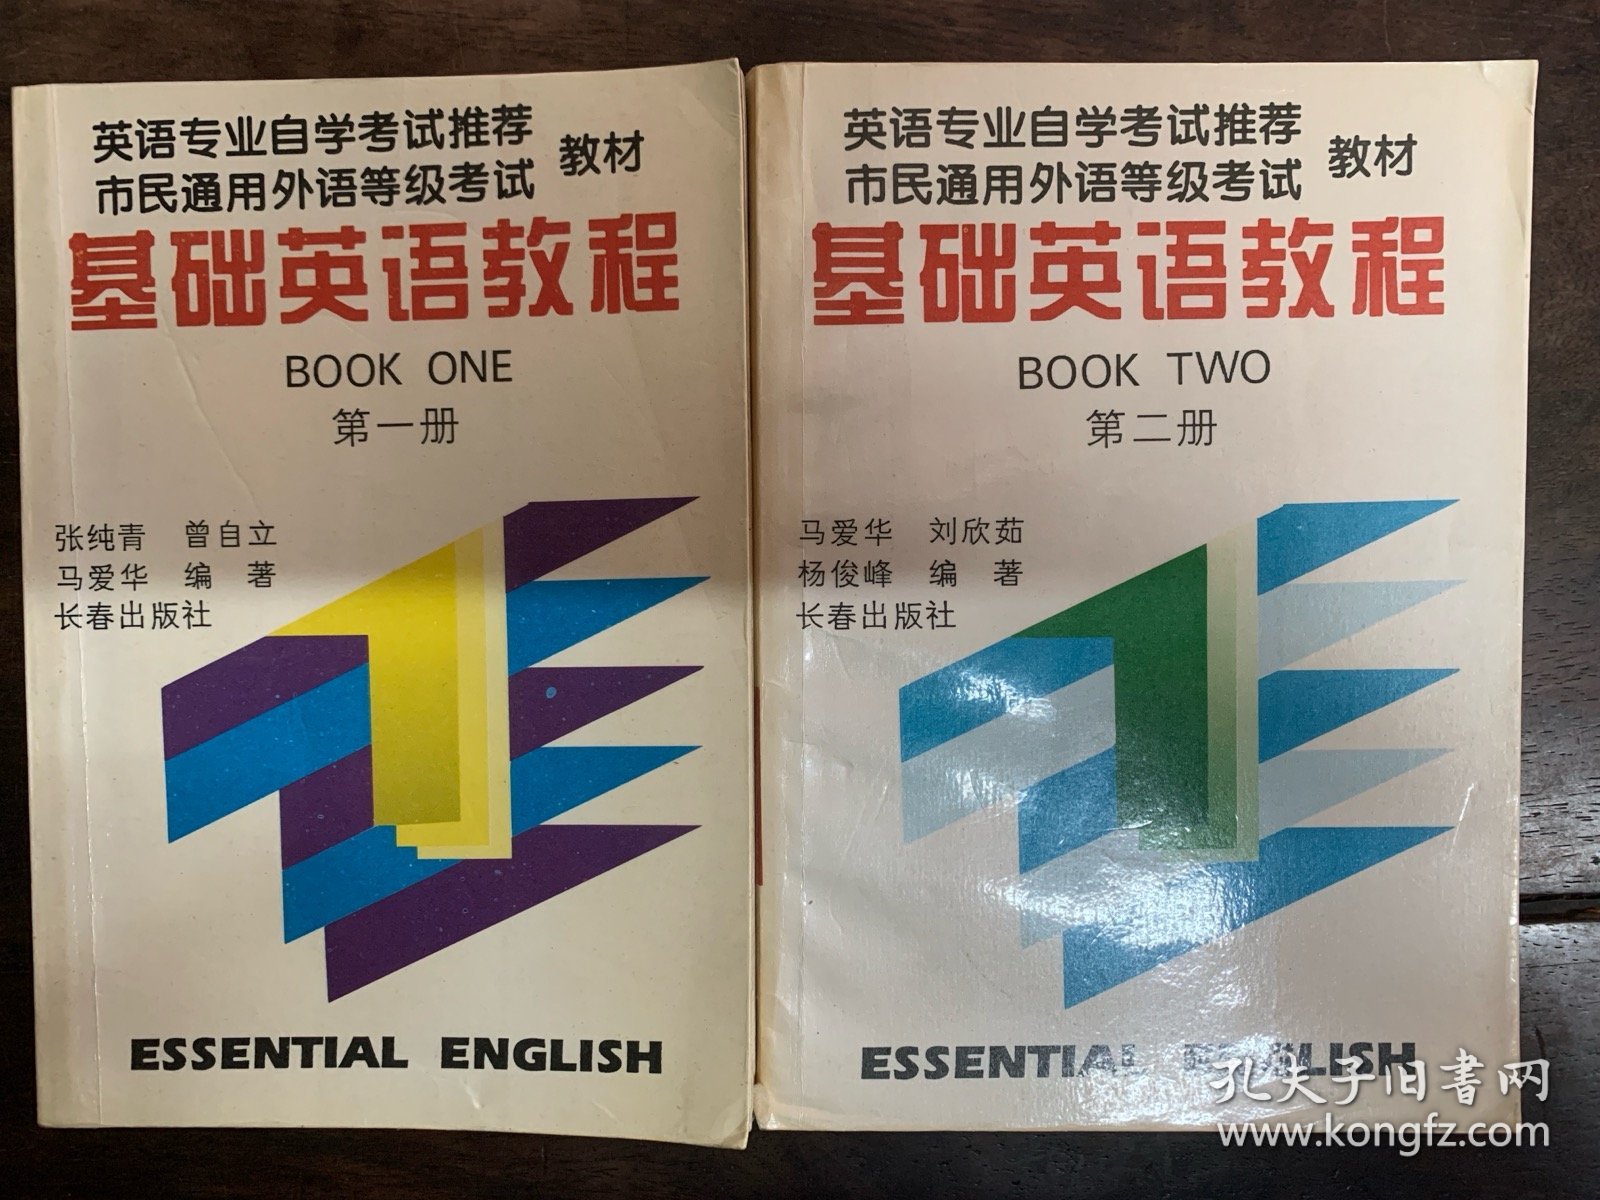 英语专业自学考试推荐 市民通用外语等级考试 教材 基础英语教程 第一册 第二册 合售